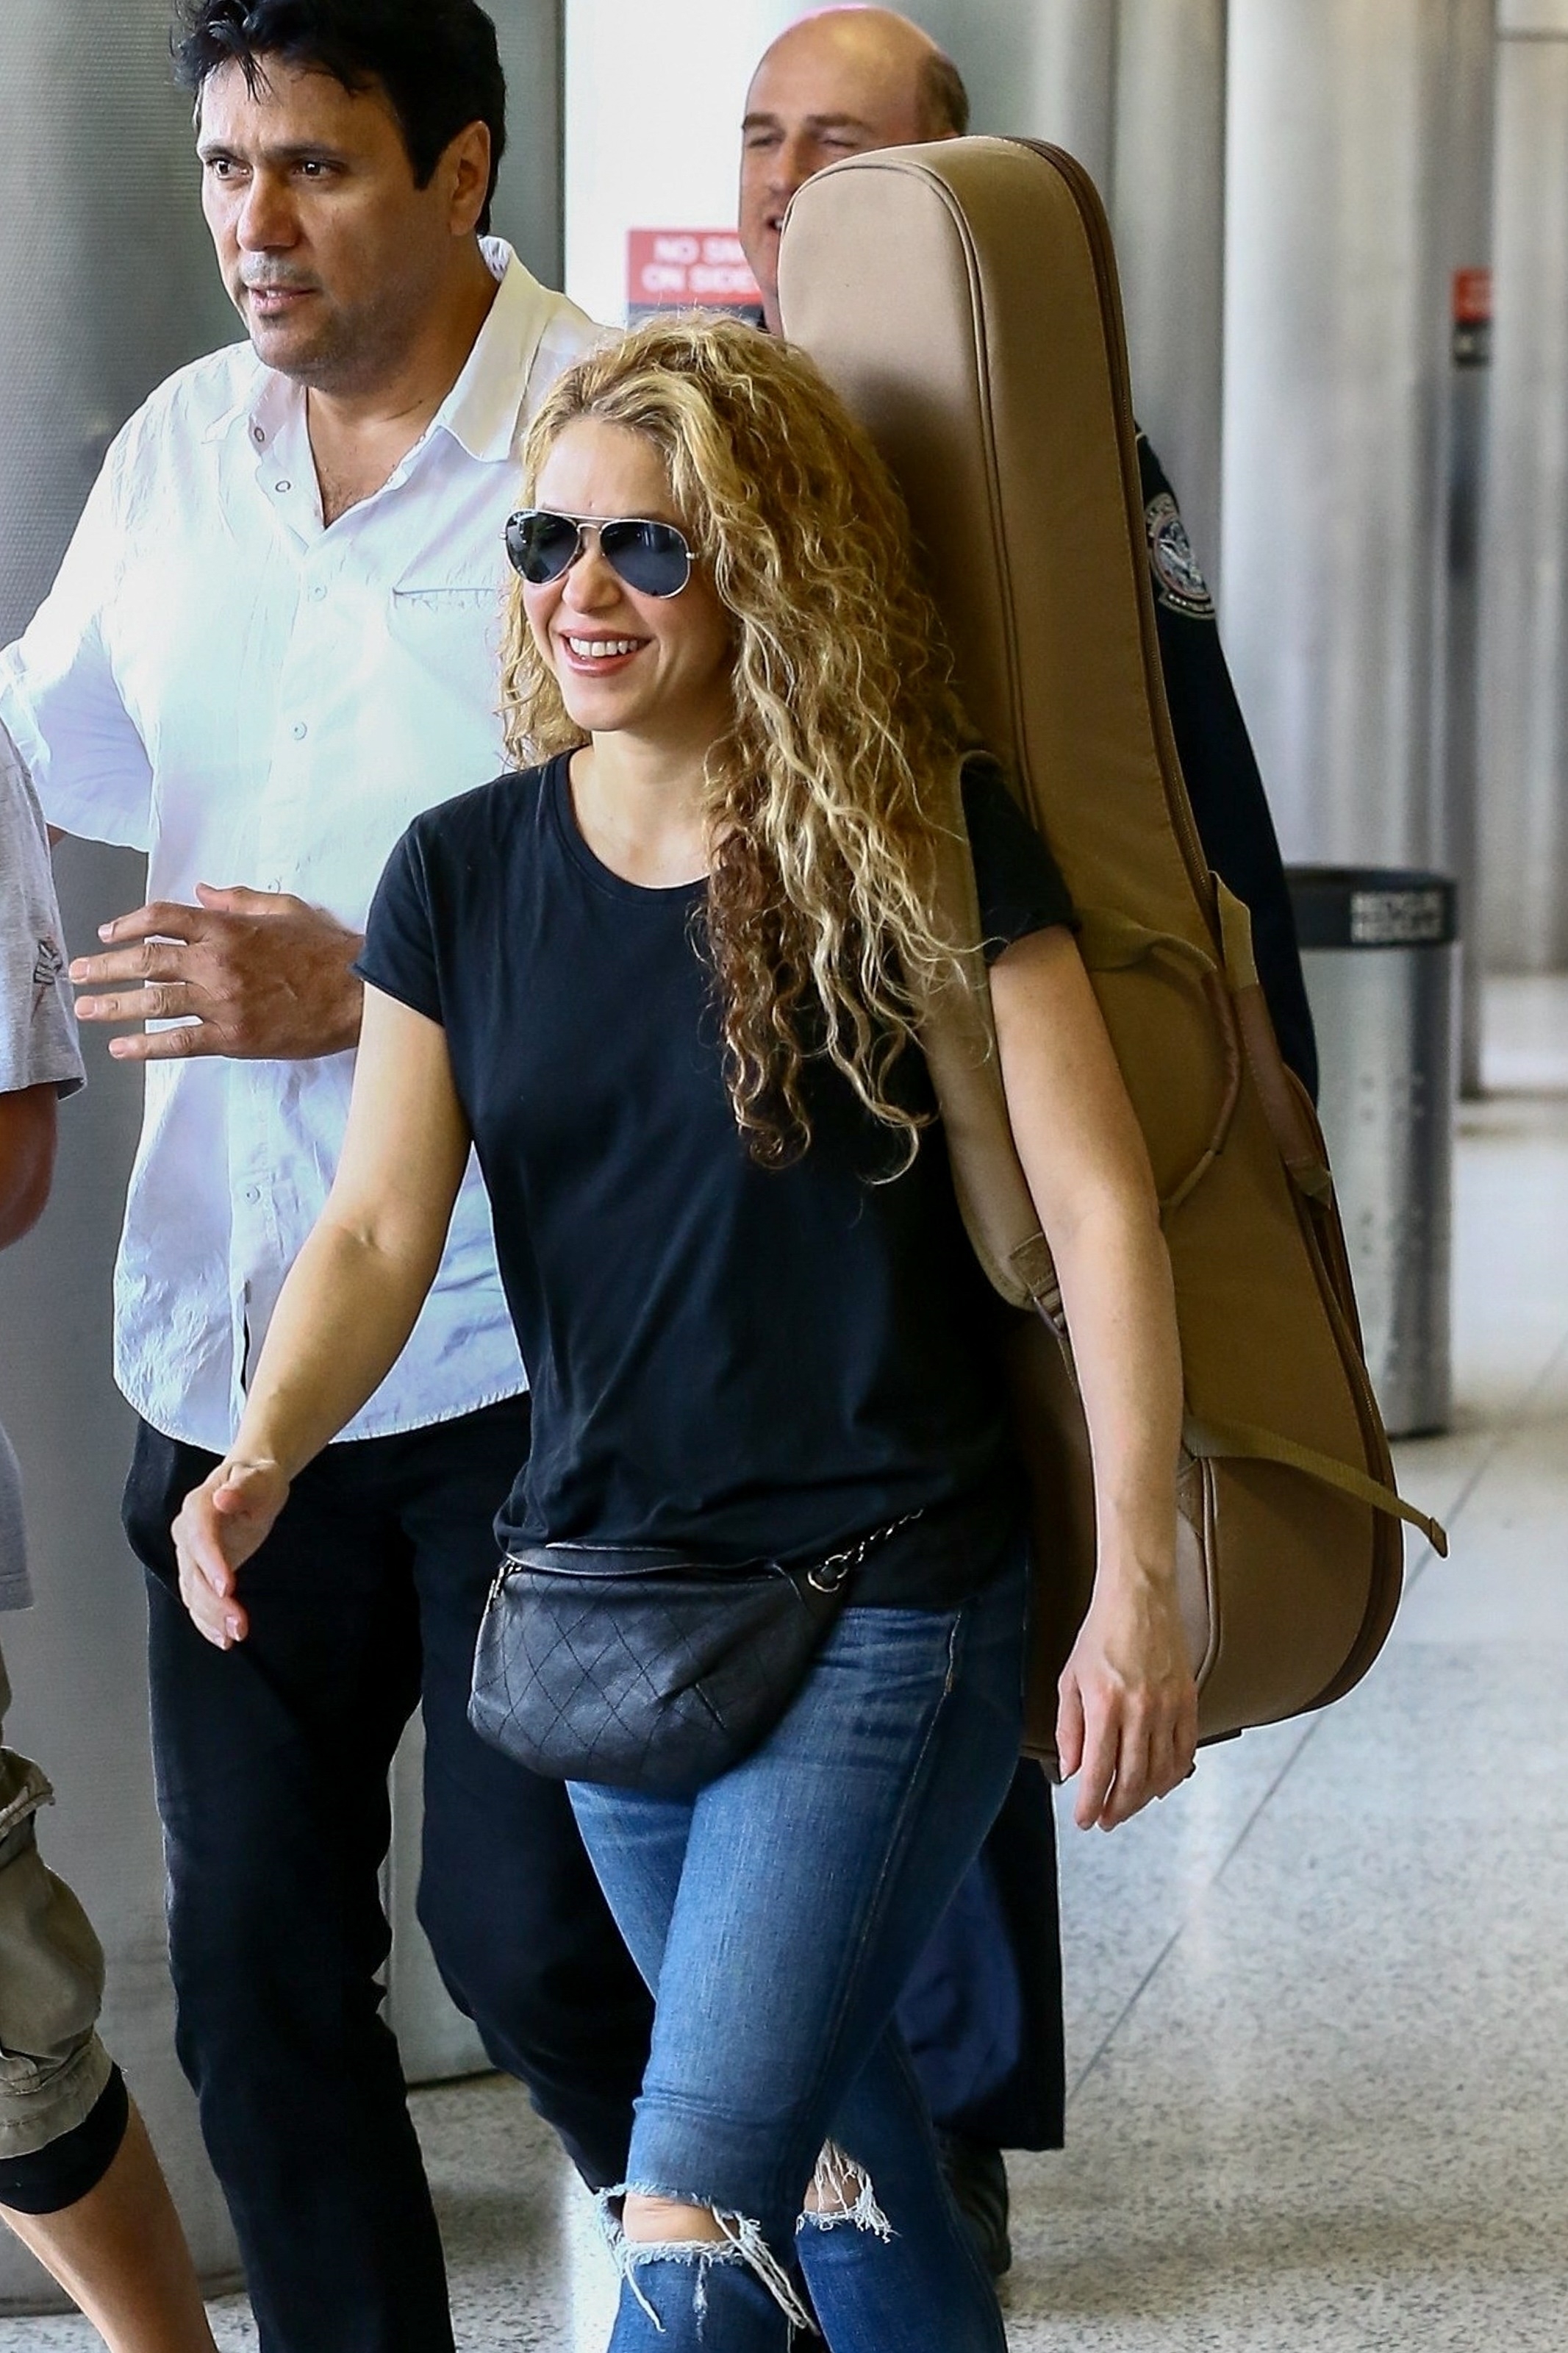 Shakira | Overview | Wonderwall.com